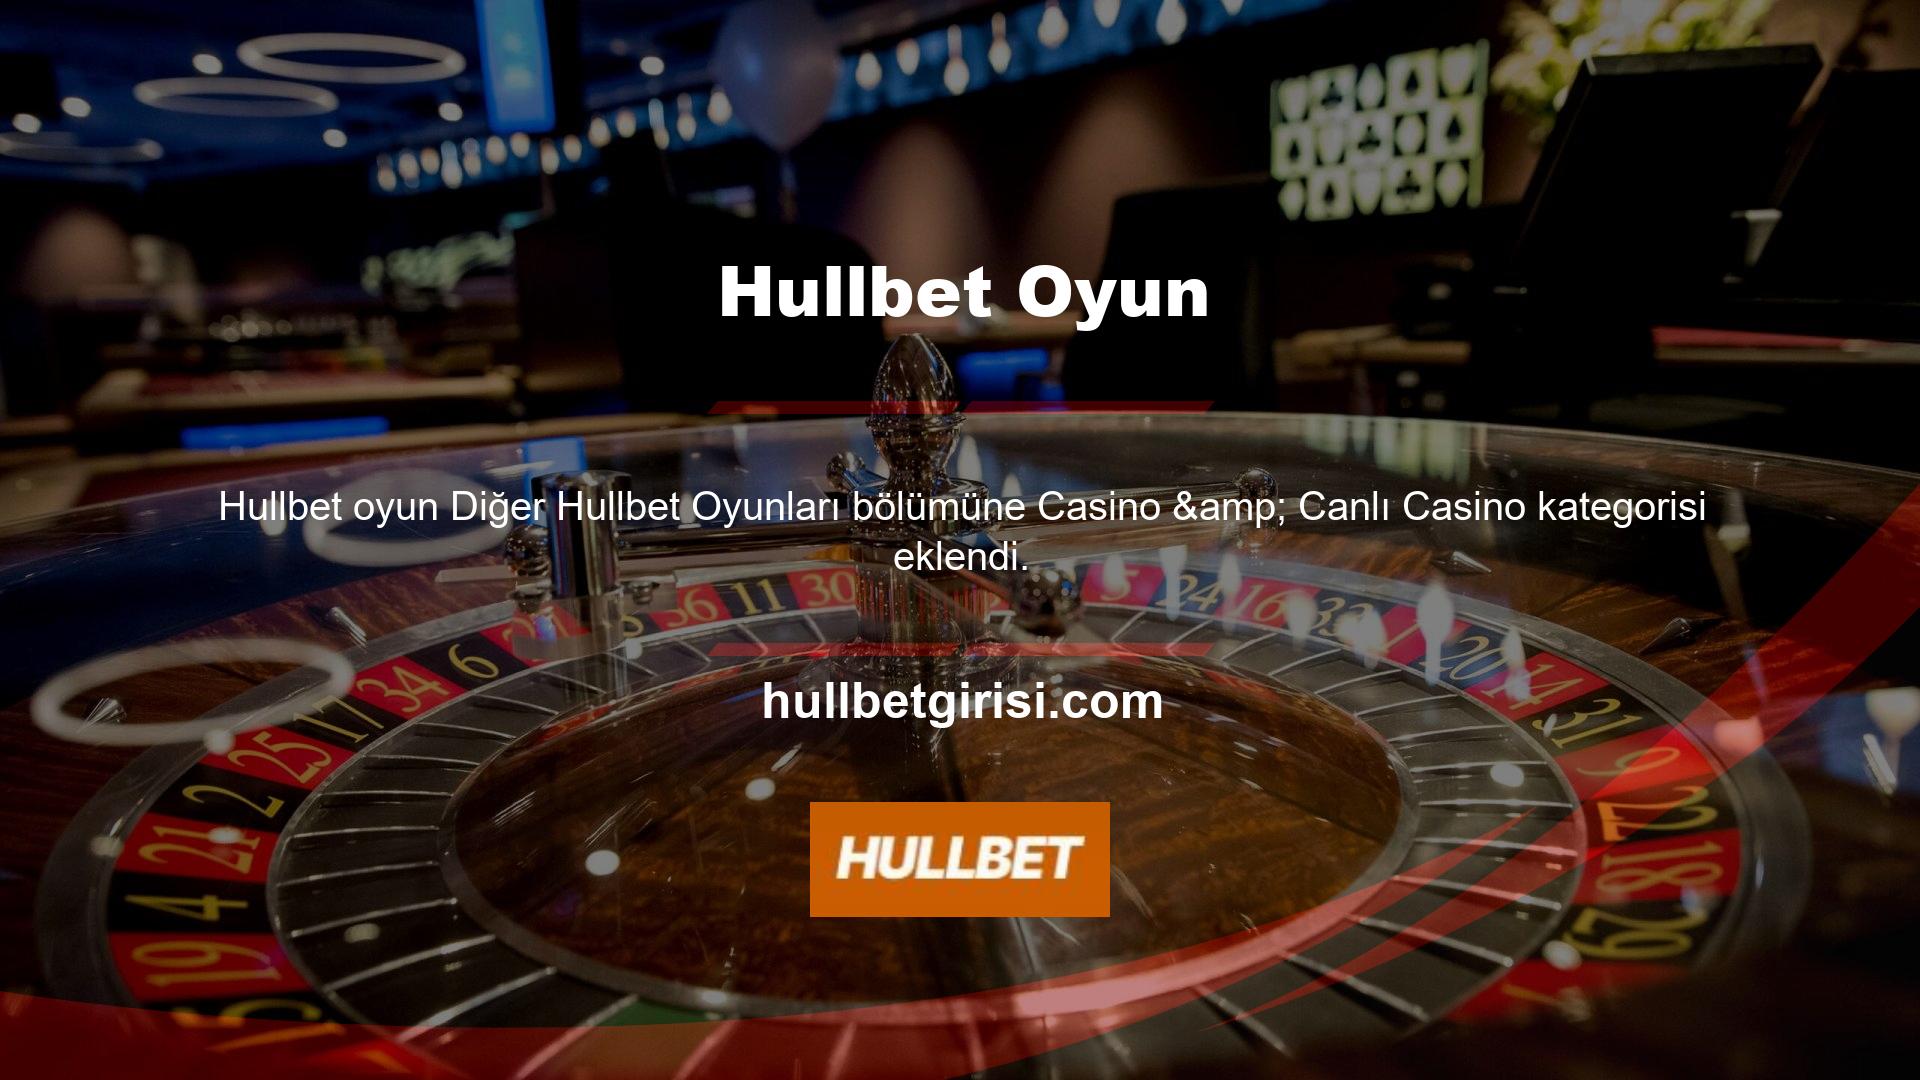 Türkiye'de casino lobileri yasaklanmıştır, bu nedenle canlı casino heyecanını yaşamanın tek yolu Hullbet gibi bir çevrimiçi casino sitesidir